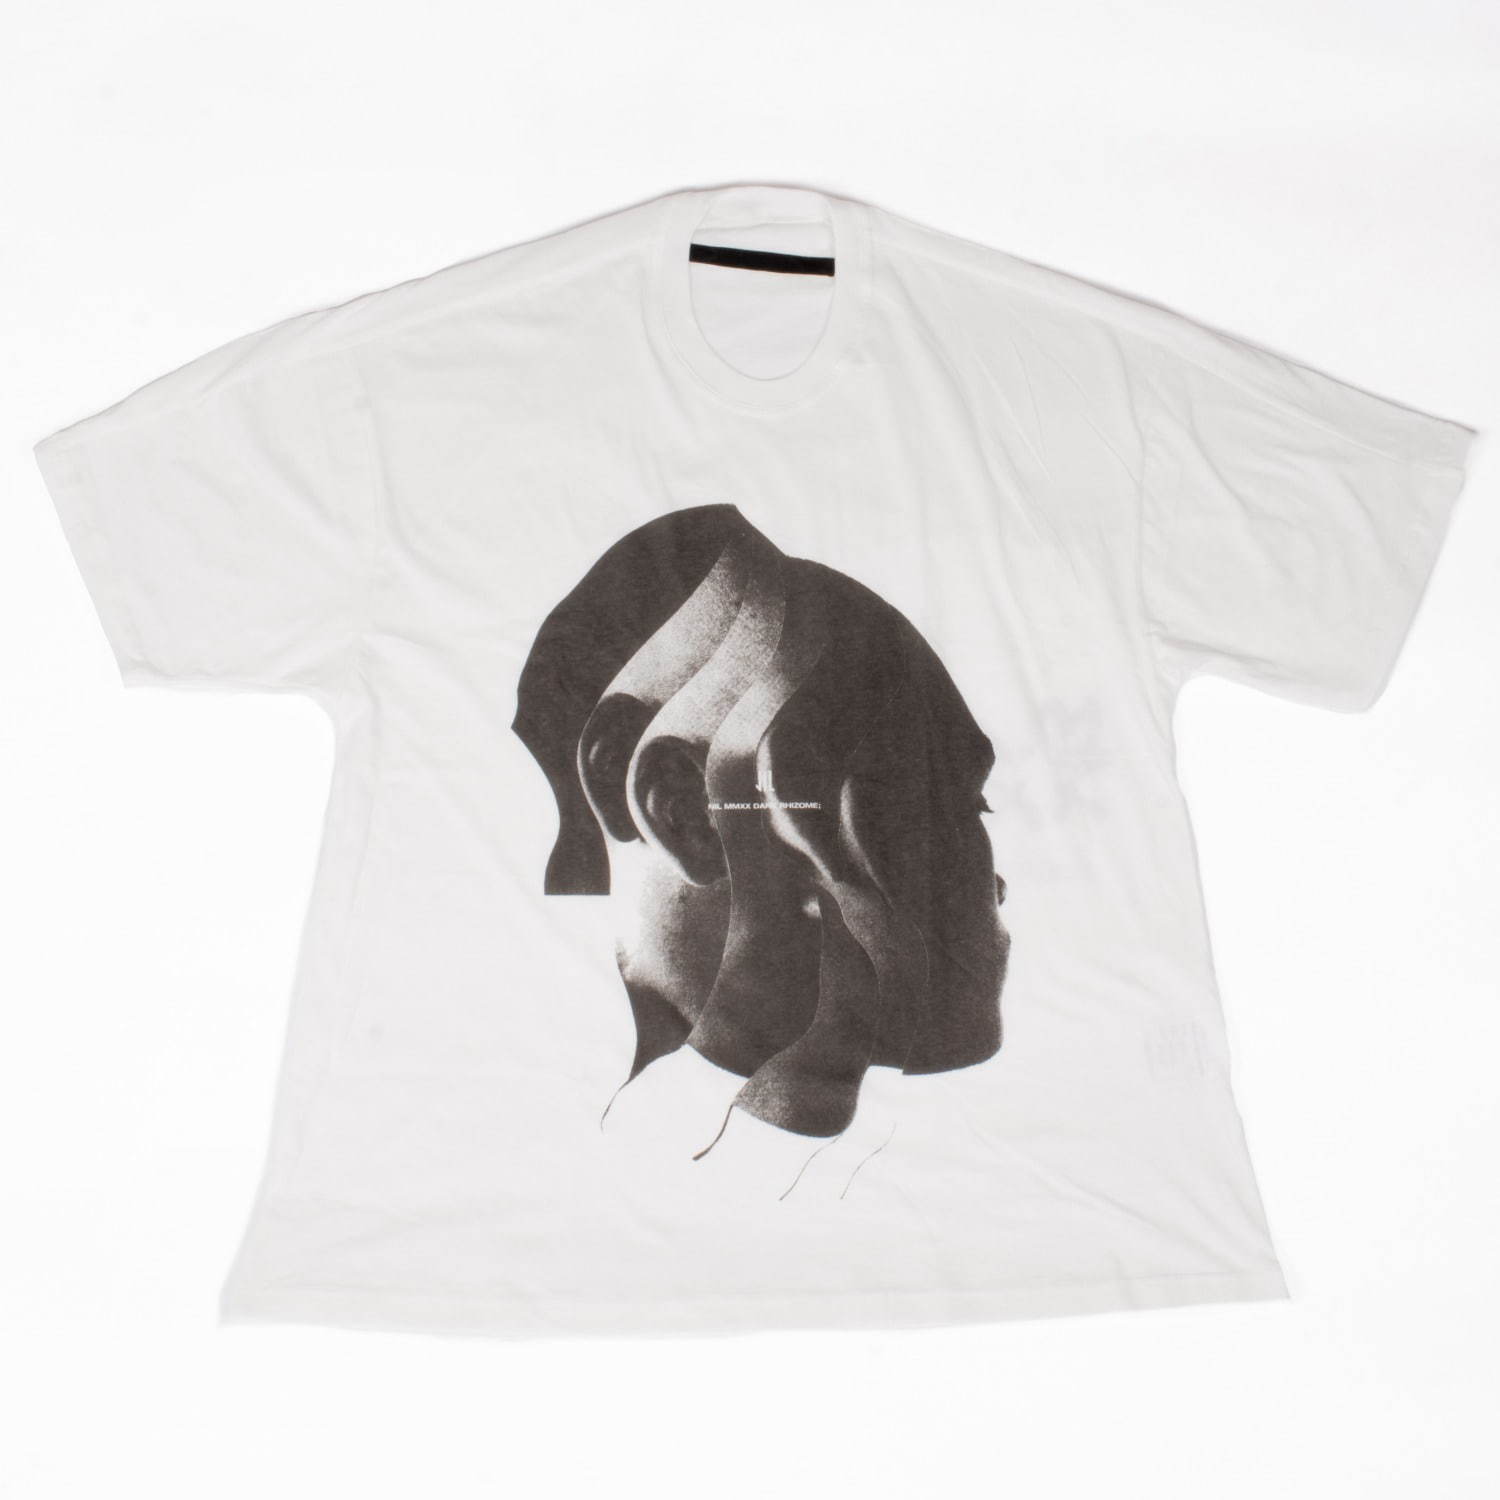 〈ニルズ〉LAアーティスト・ジェシー・ドラクスラーのコラージュアート白Tシャツ